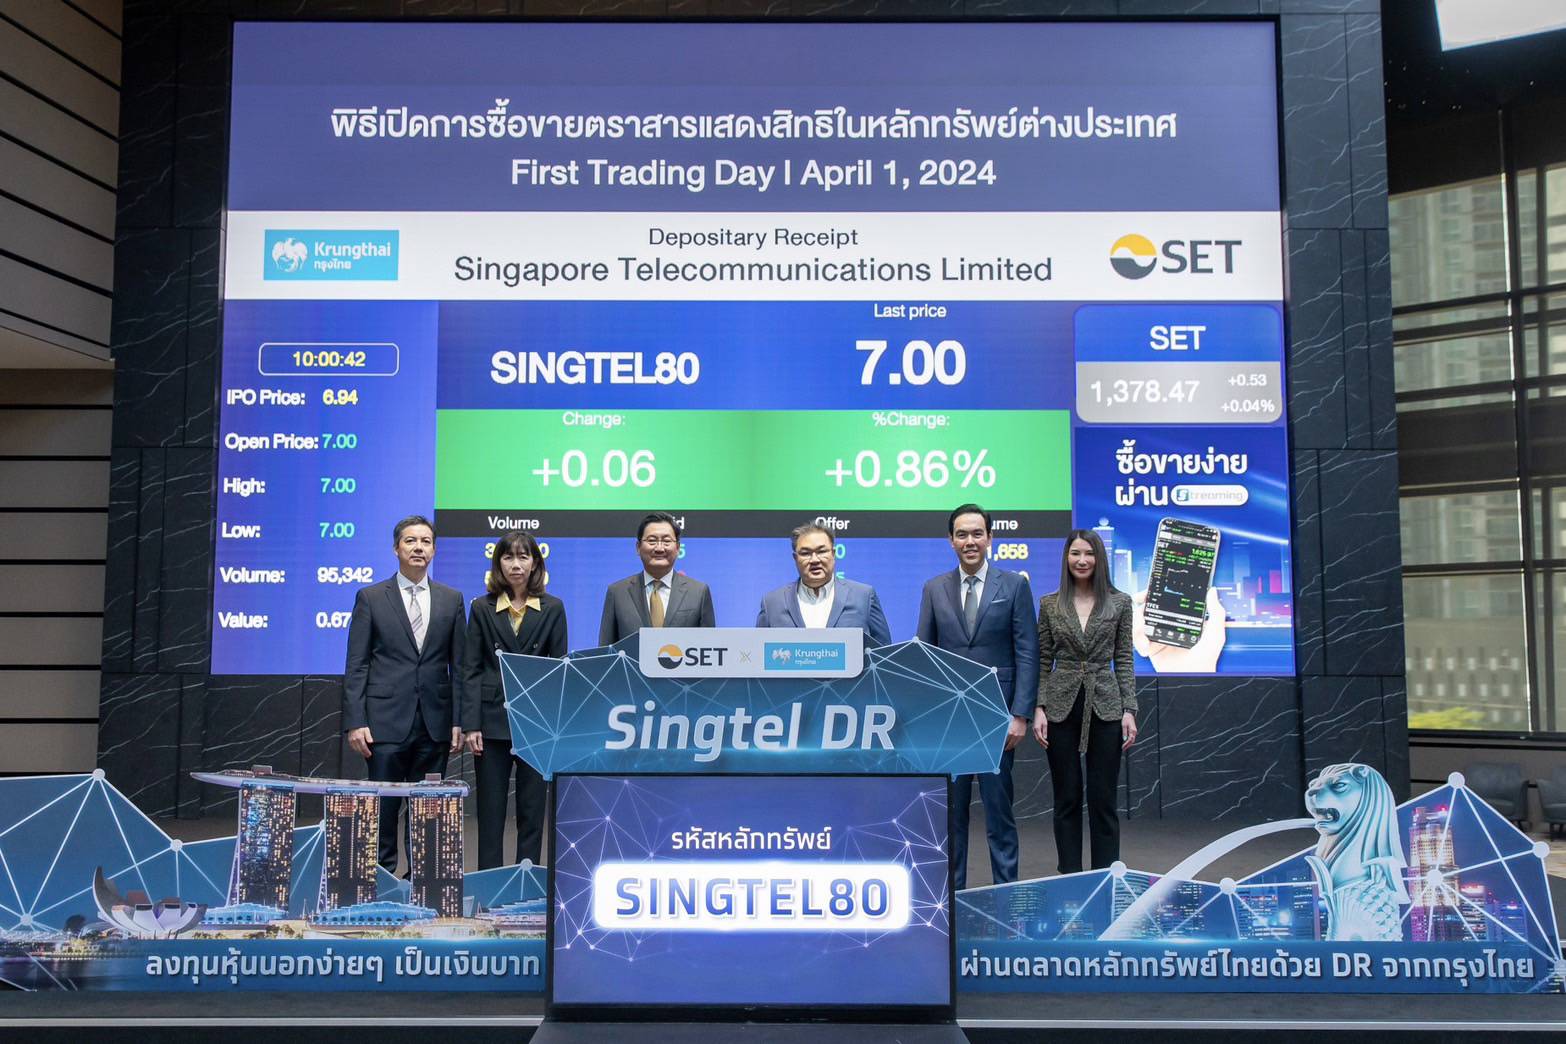 กรุงไทย ปลื้ม!เข้าร่วมพิธีเปิดซื้อขายวันแรก "Singtel DR"   